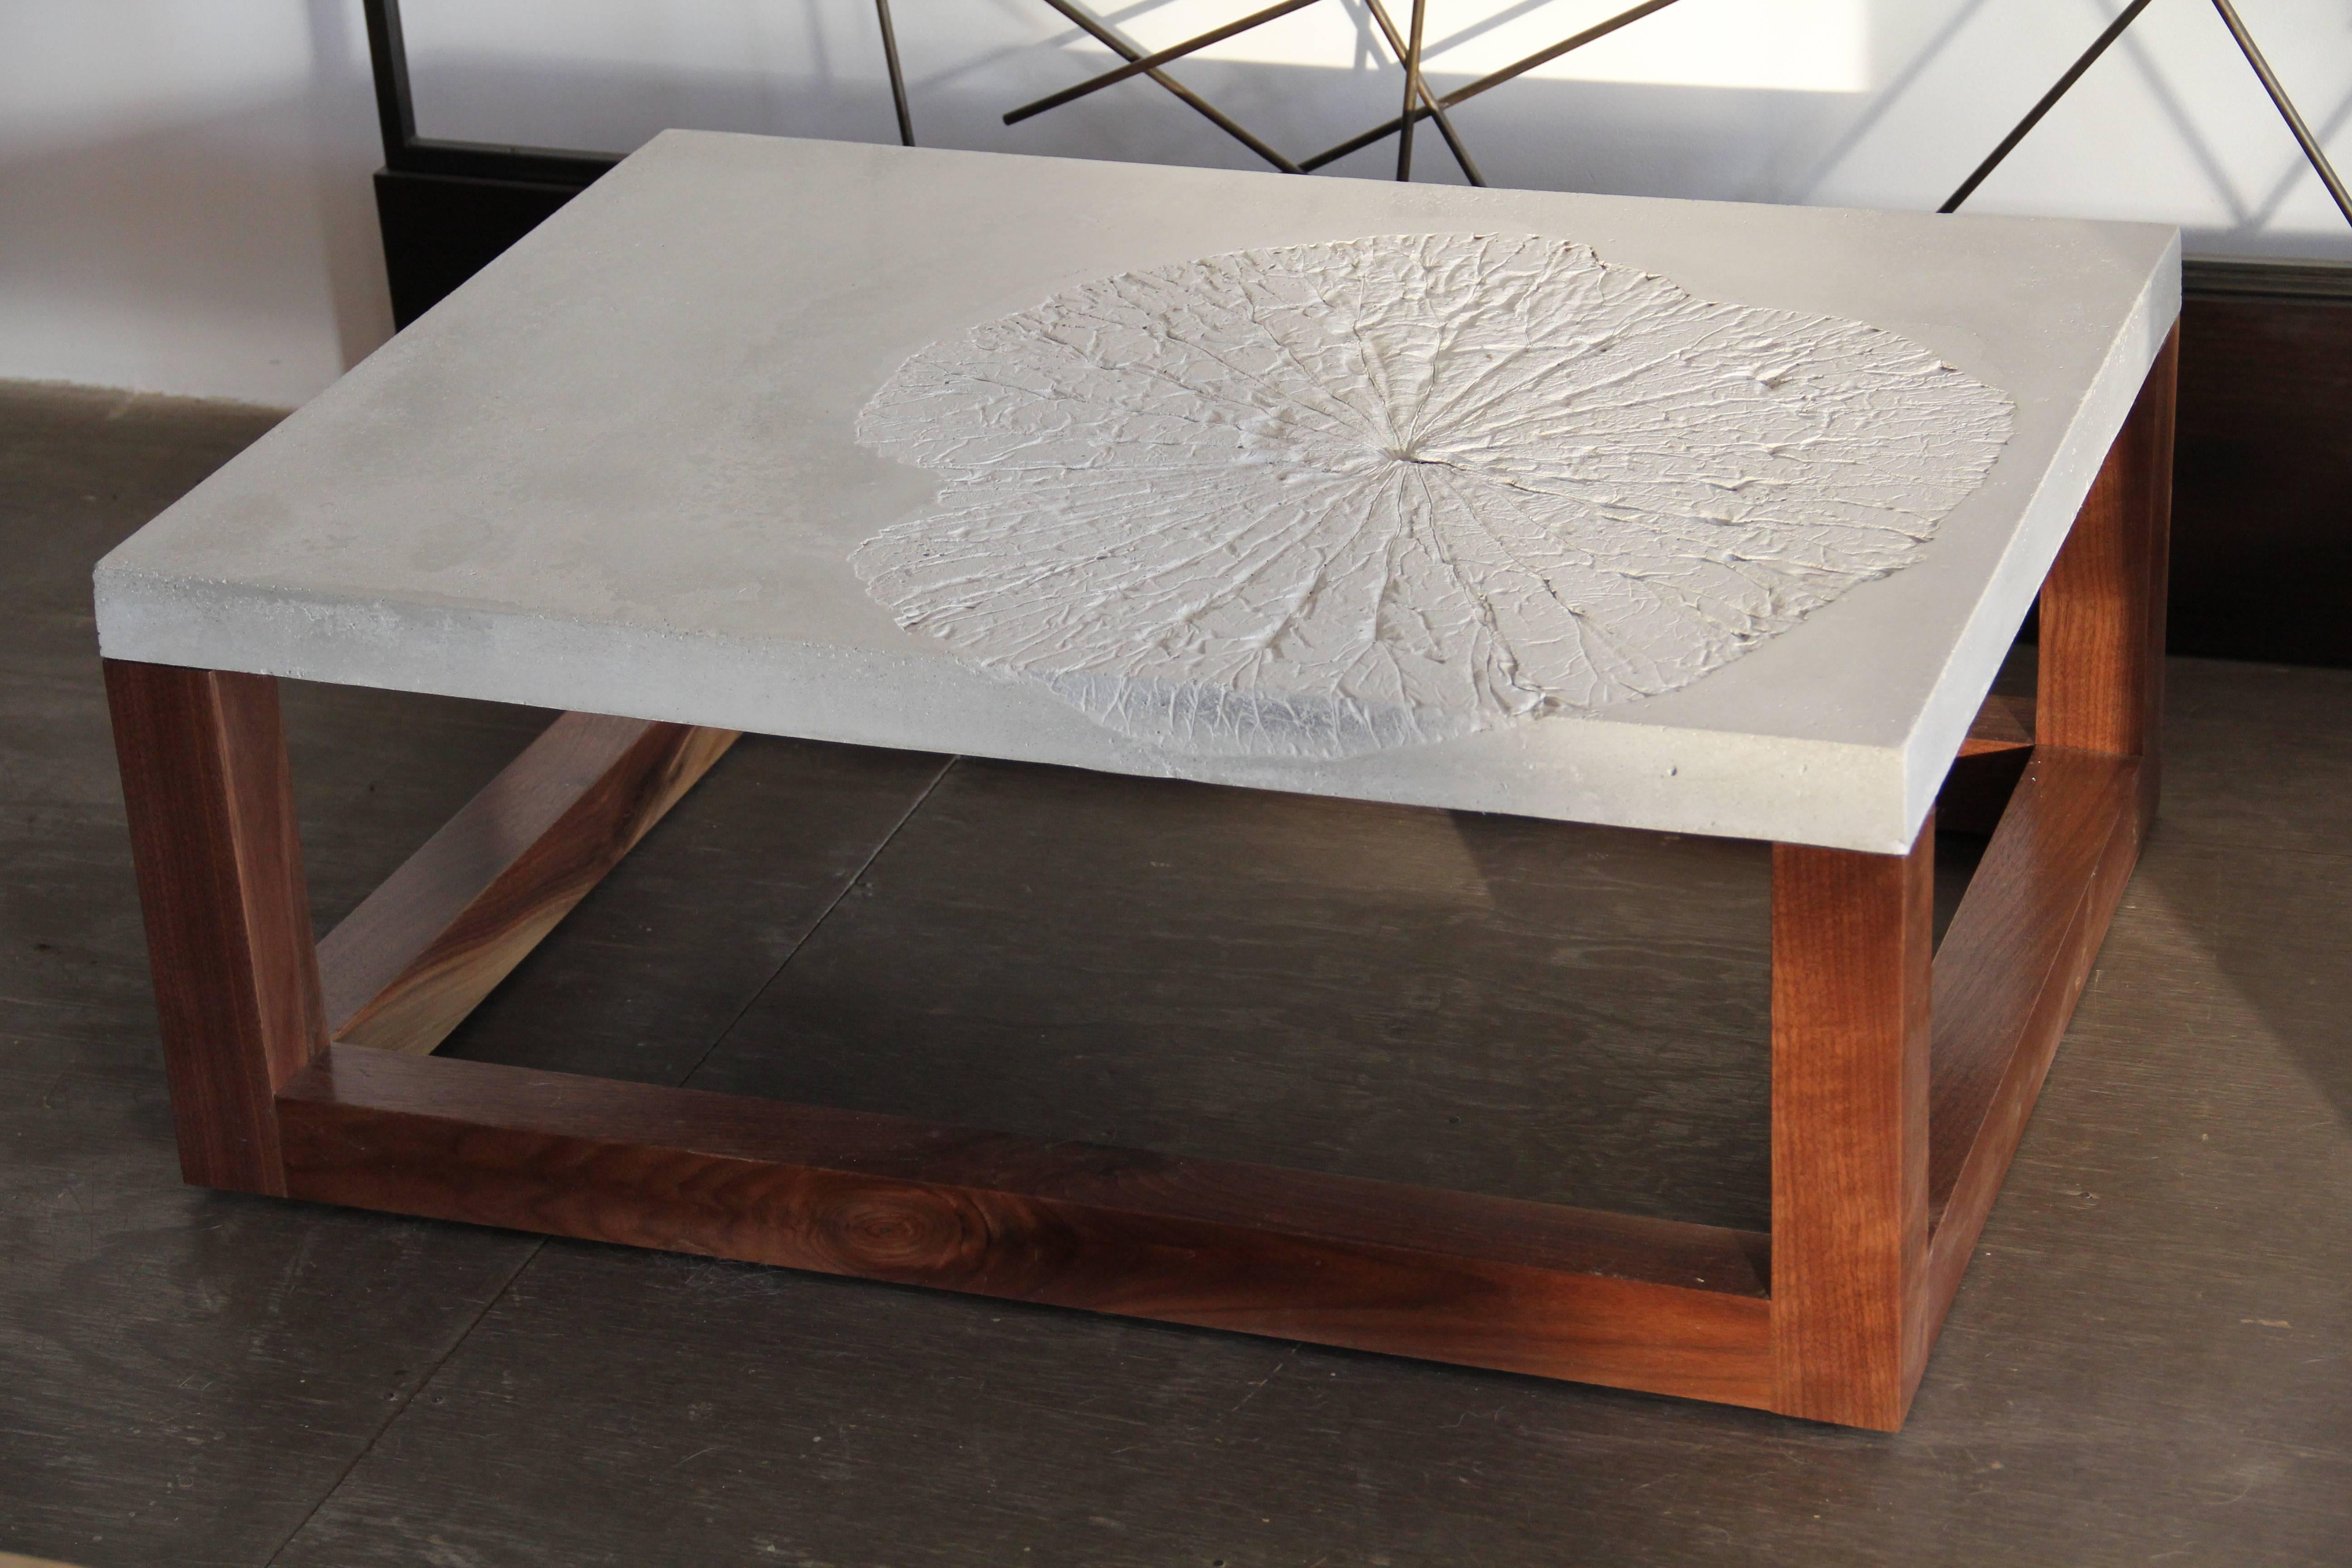 Minimalist Lotus Leaf or Minimal Modern Concrete Coffee Table For Sale